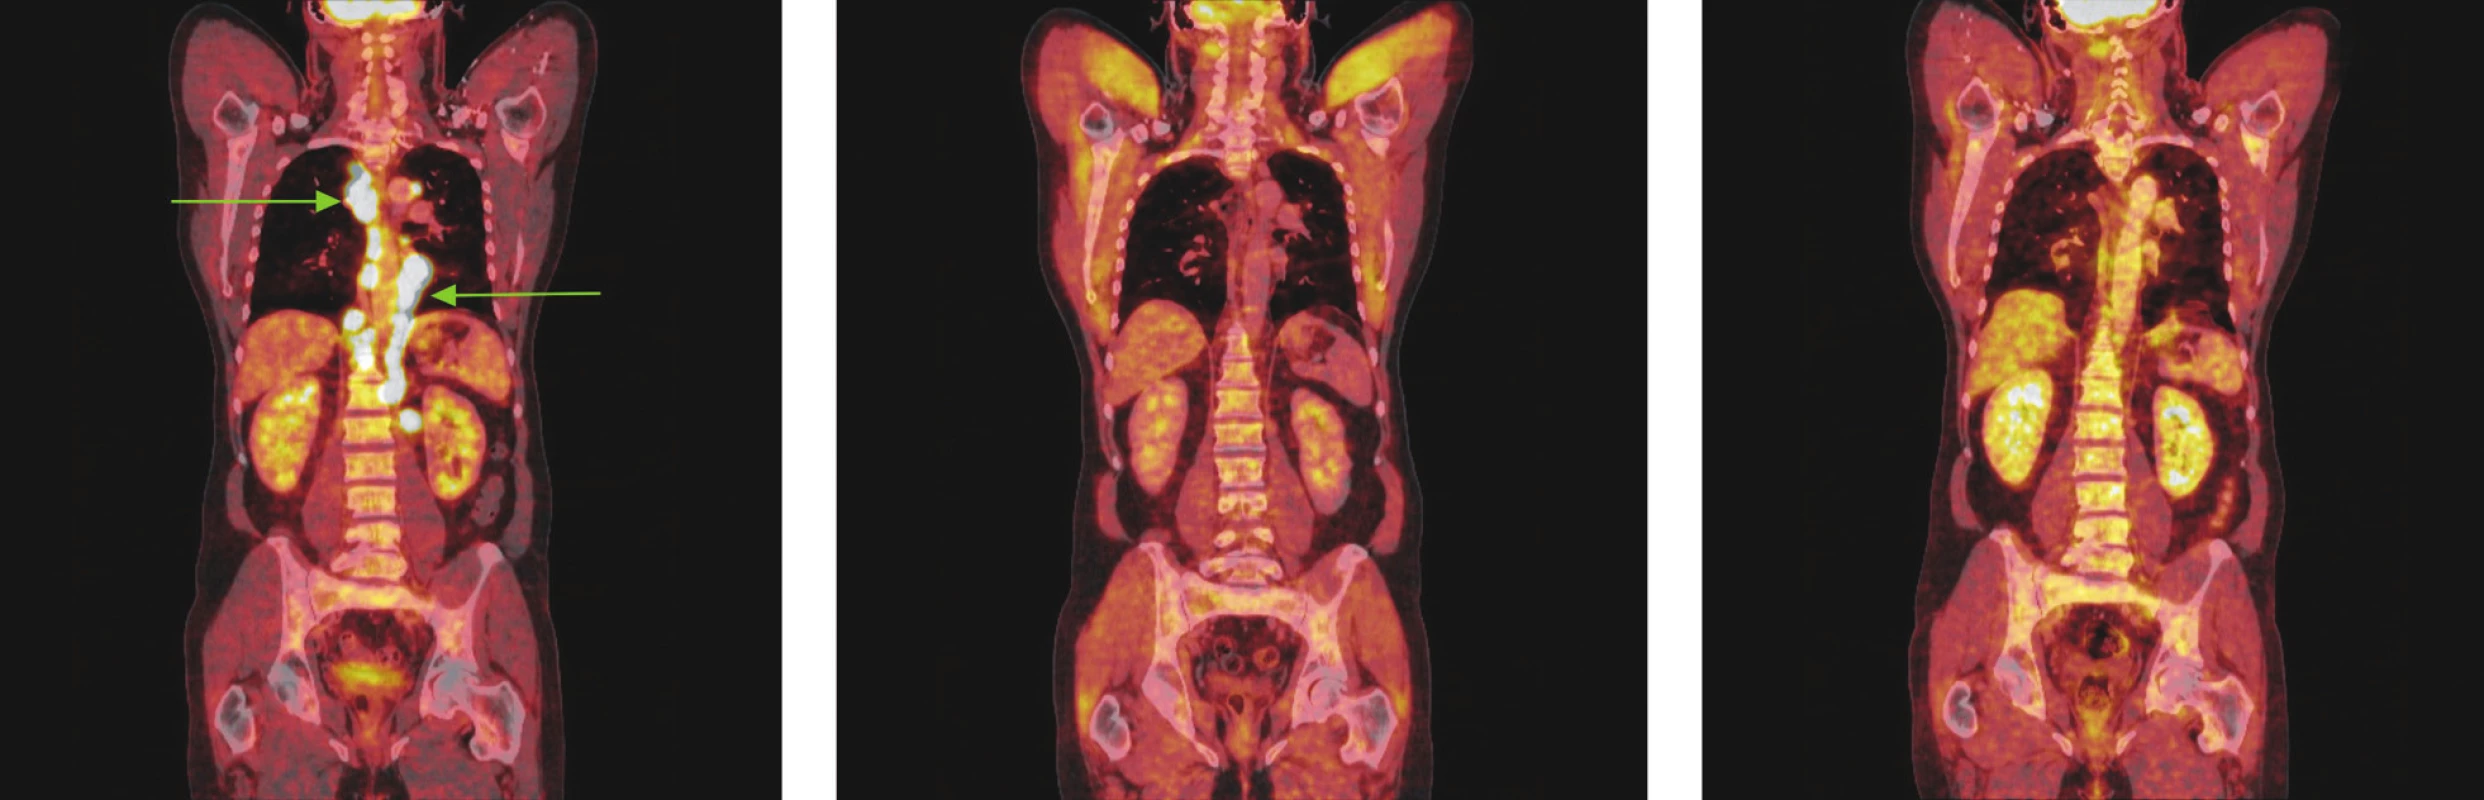 Série PET/CT snímků u téhož nemocného s difuzním B-velkobuněčným lymfomem před léčbou, po 2 cyklech léčby a po ukončení léčby. První snímek ukazuje mnohočetná ložiska hypermetabolismu glukózy ve zvětšených lymfatických uzlinách zvětšených lymfatických uzlinách ve všech oddílech mediastina a kolem bříšní aorty. Po 2 cyklech léčby došlo ke zmenšení všech lymfatických uzlin, žádná nevykazuje hypermetabolismus glukózy a po skončení léčby je patrná normalizace velikosti lymfatických uzlin, všechny bez hypermetabolismu glukózy.